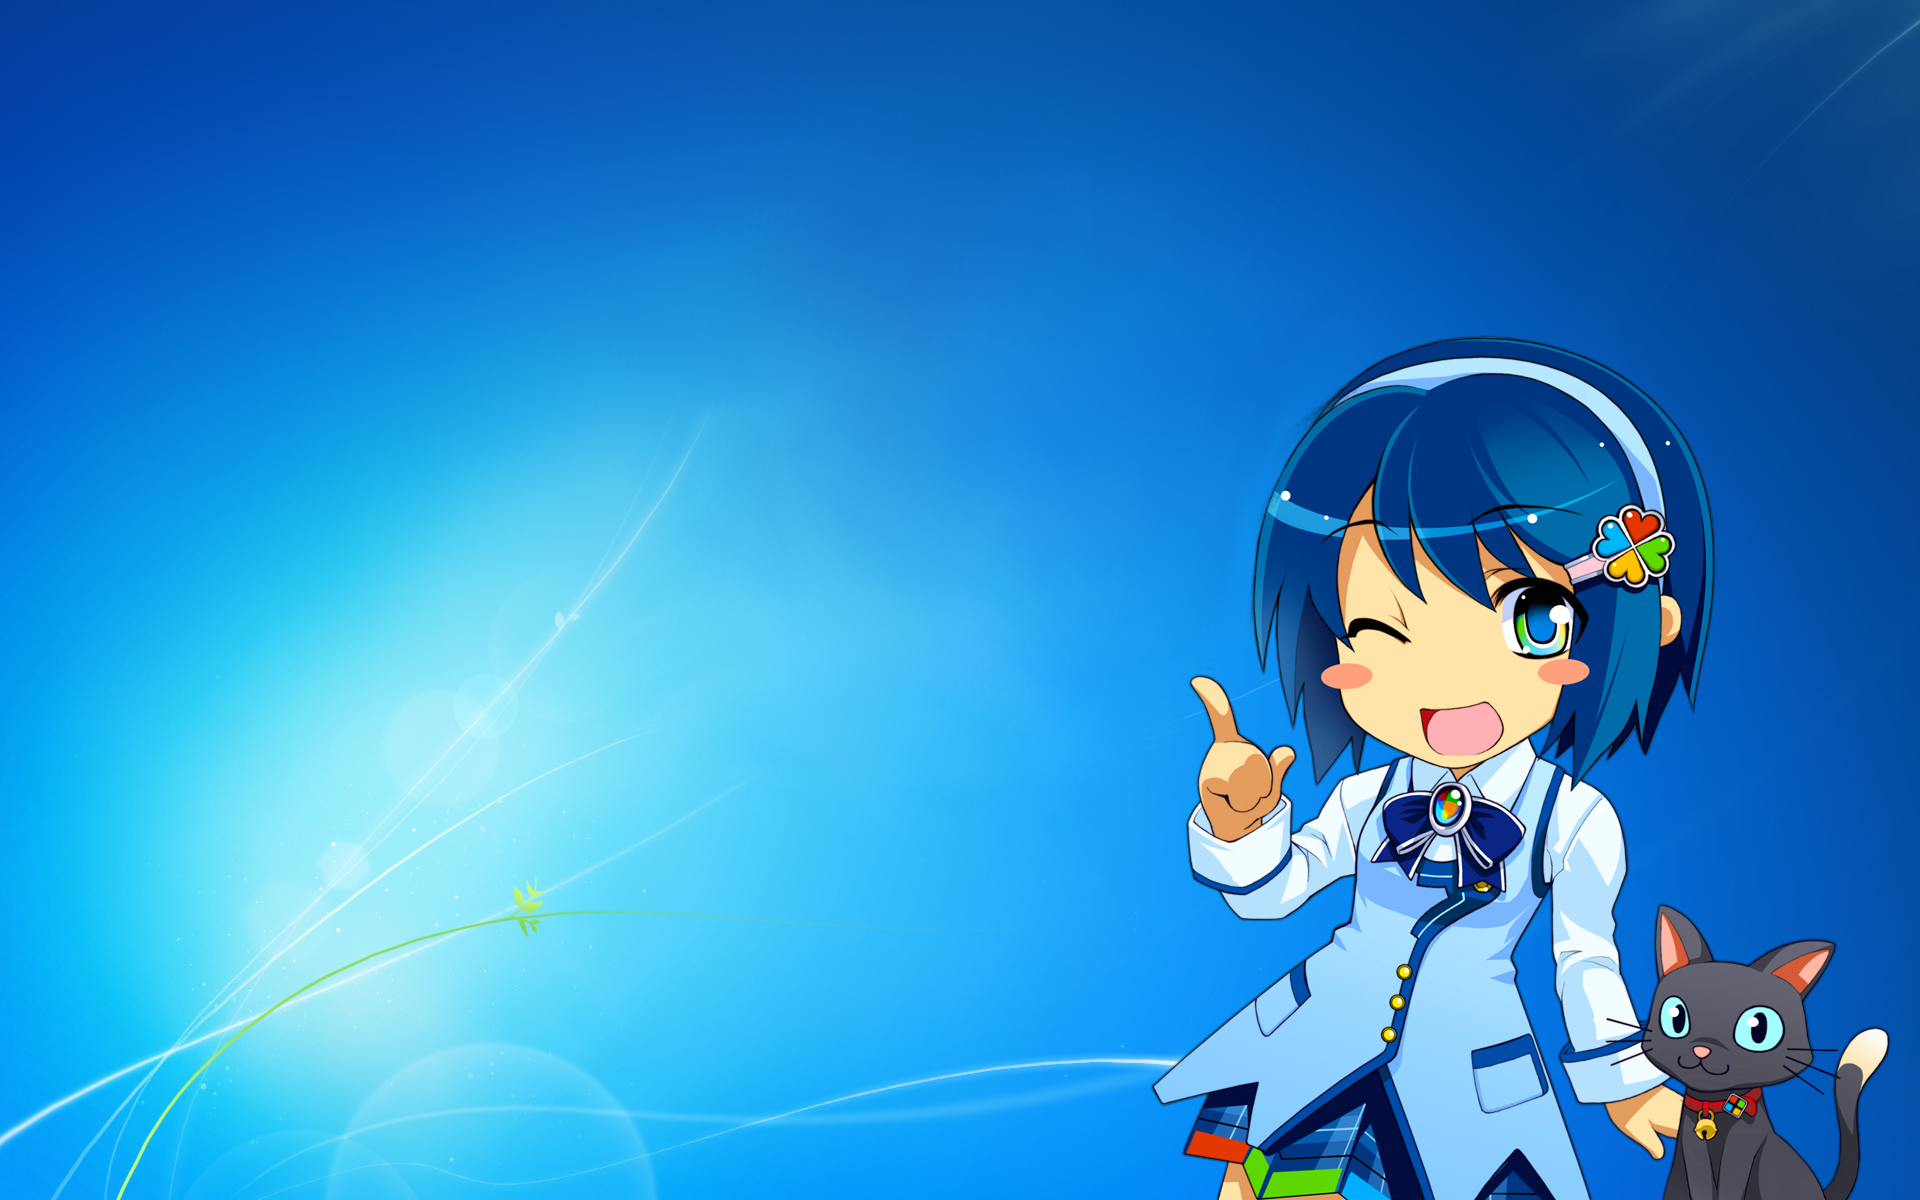 Windows 7, Madobe Nanami, anime, OS-tan - desktop wallpaper